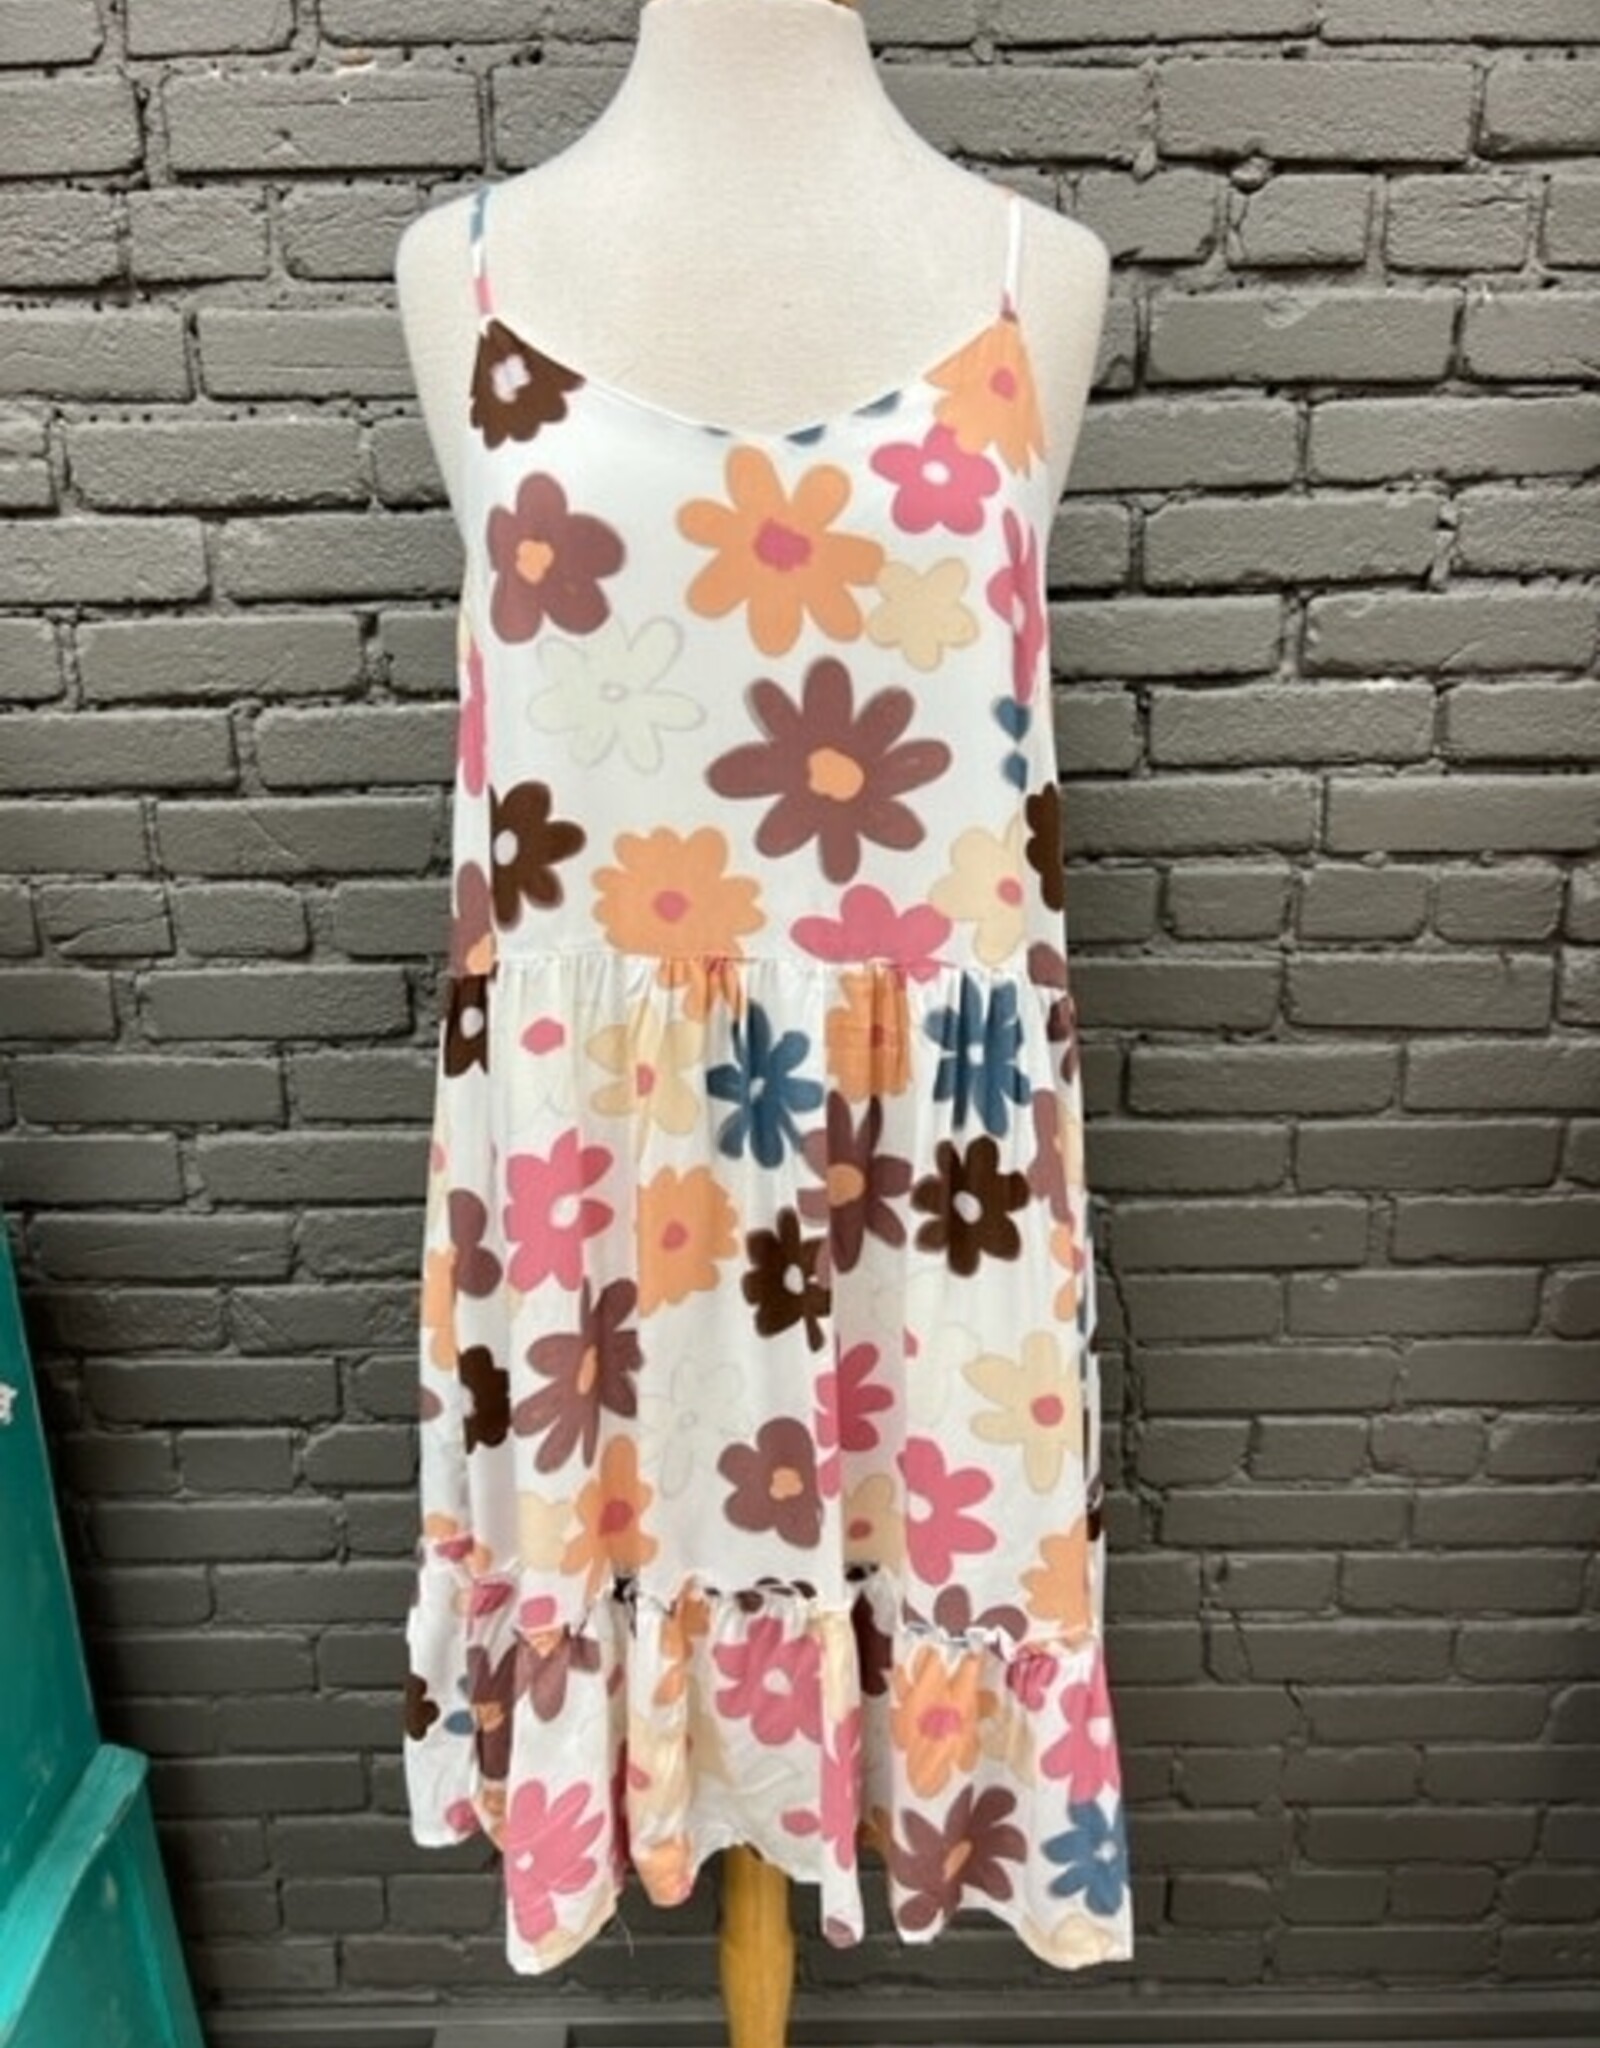 Dress Daisy Flower Print Dress